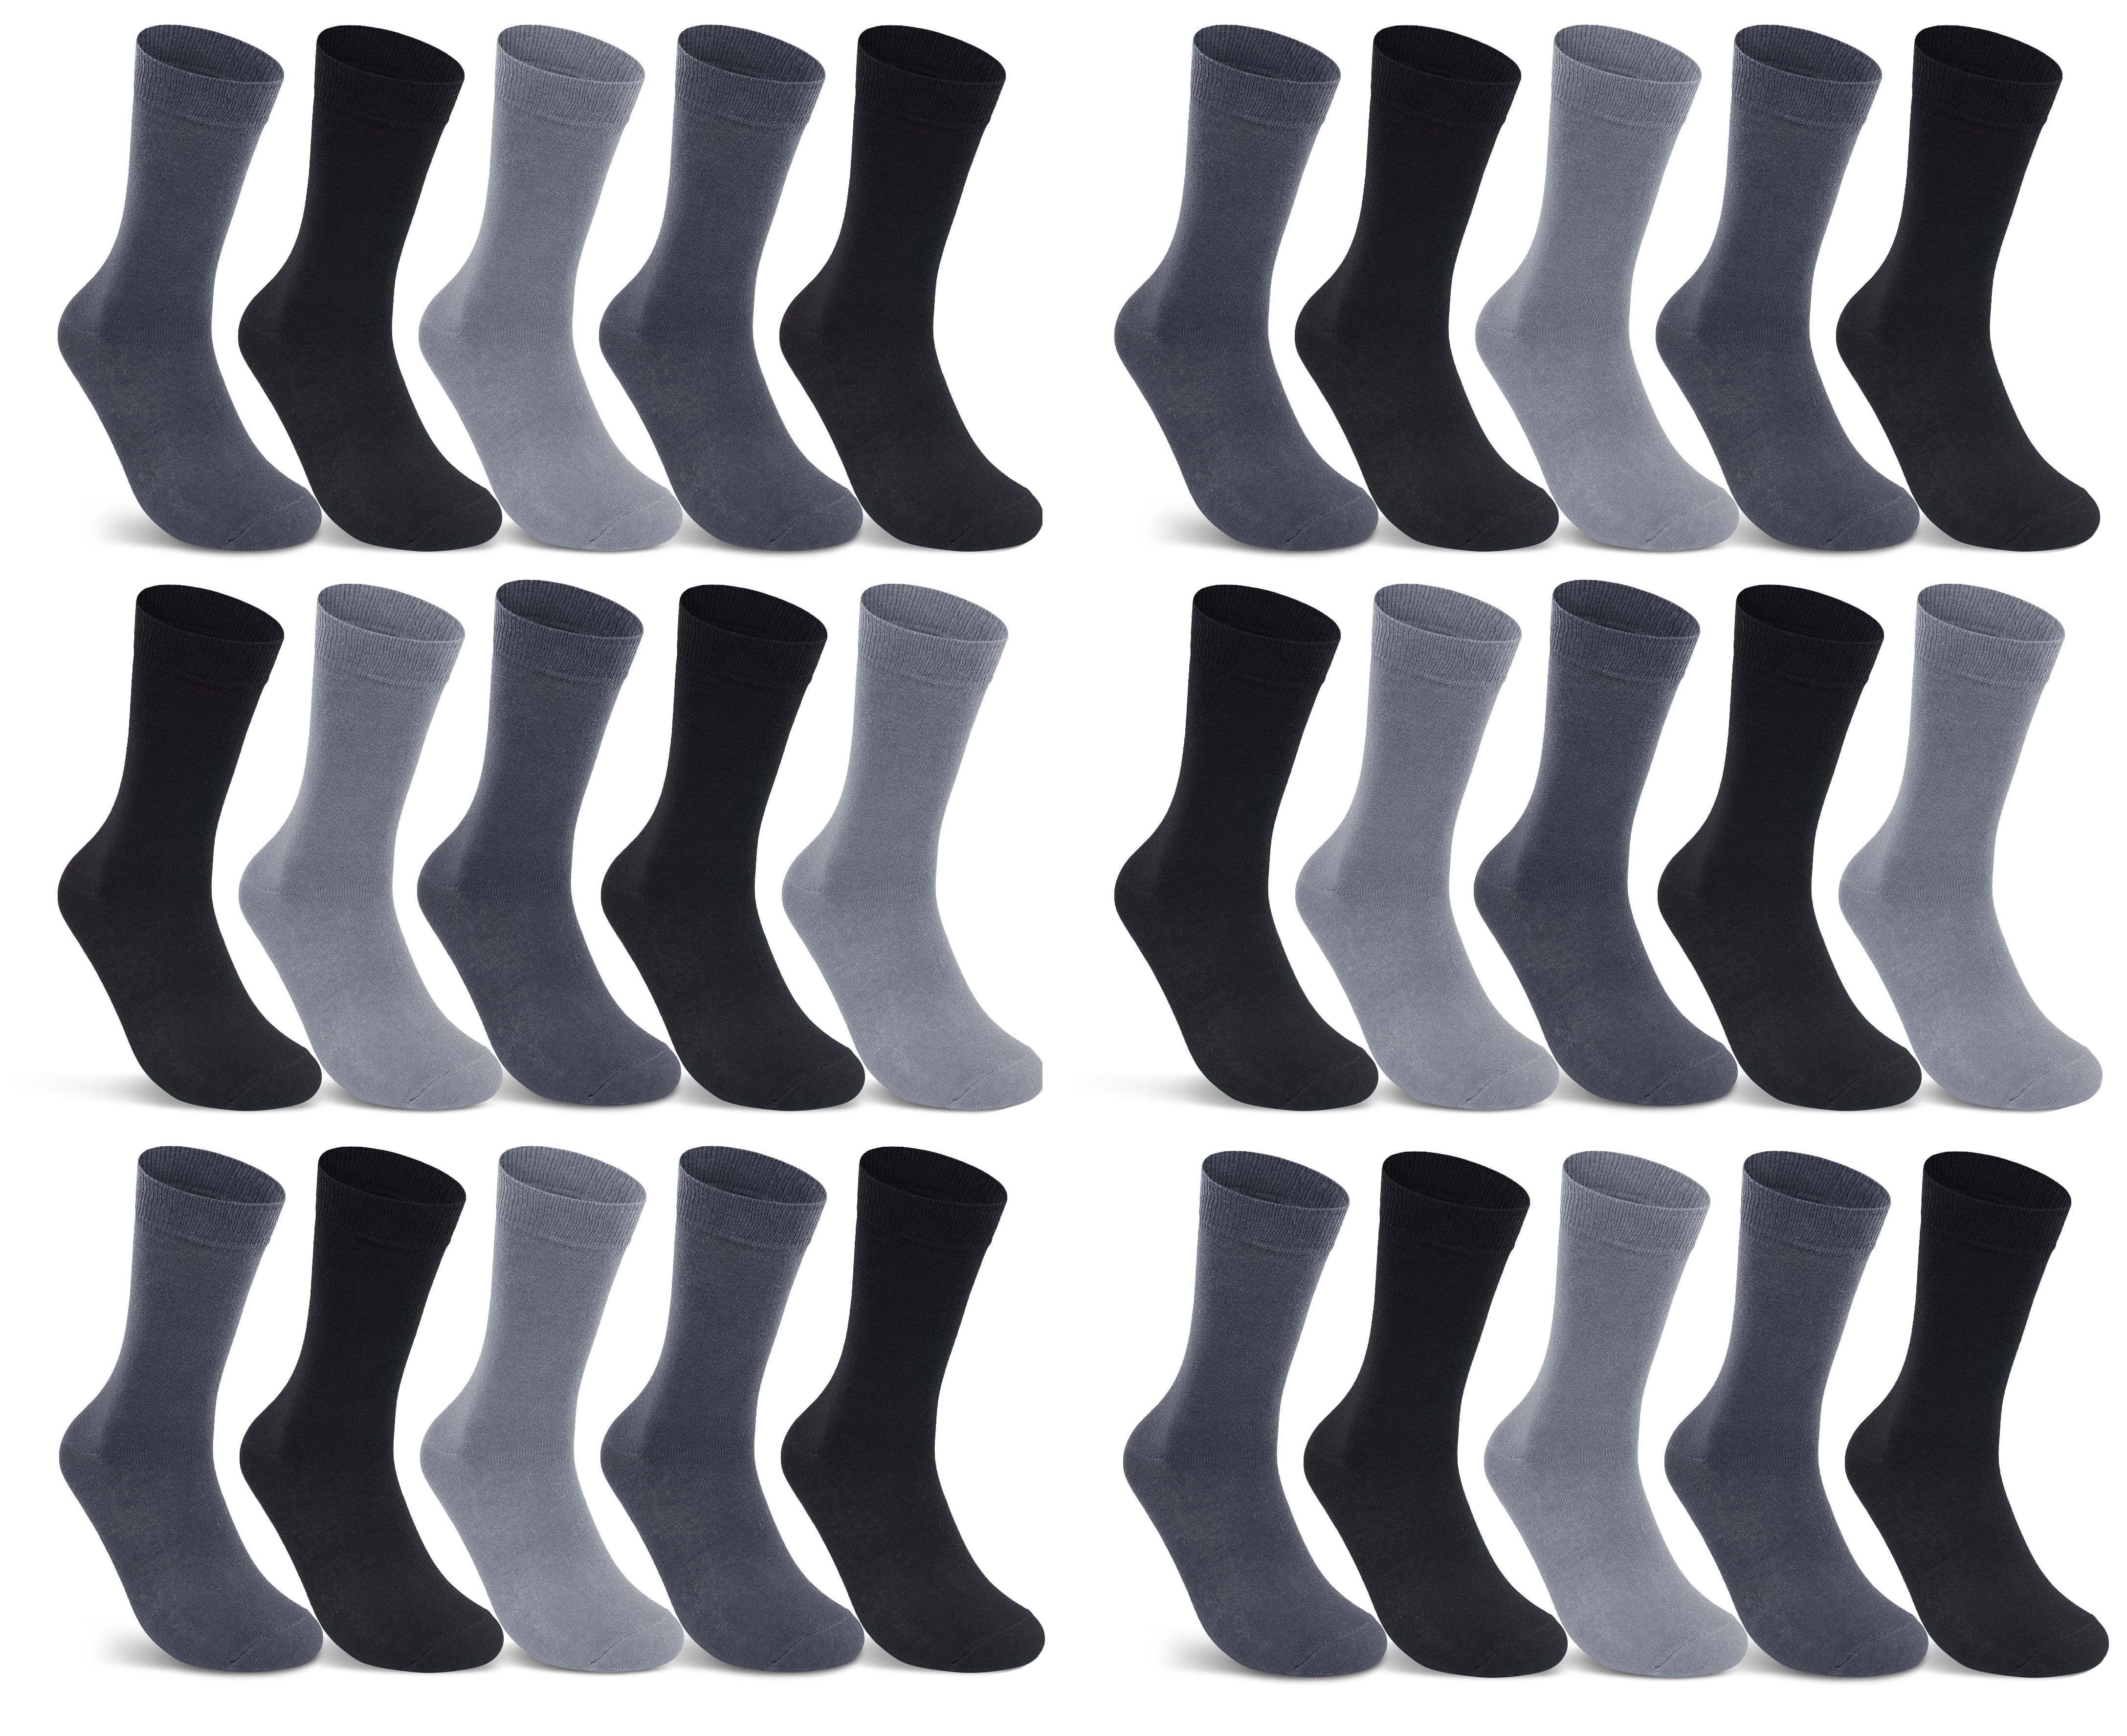 sockenkauf24 Socken 10 I 20 I 30 Paar Damen & Herren Business Socken Baumwolle (Anthrazit, Schwarz, Grau, 30-Paar, 47-50) mit Komfortbund Strümpfe - 10700